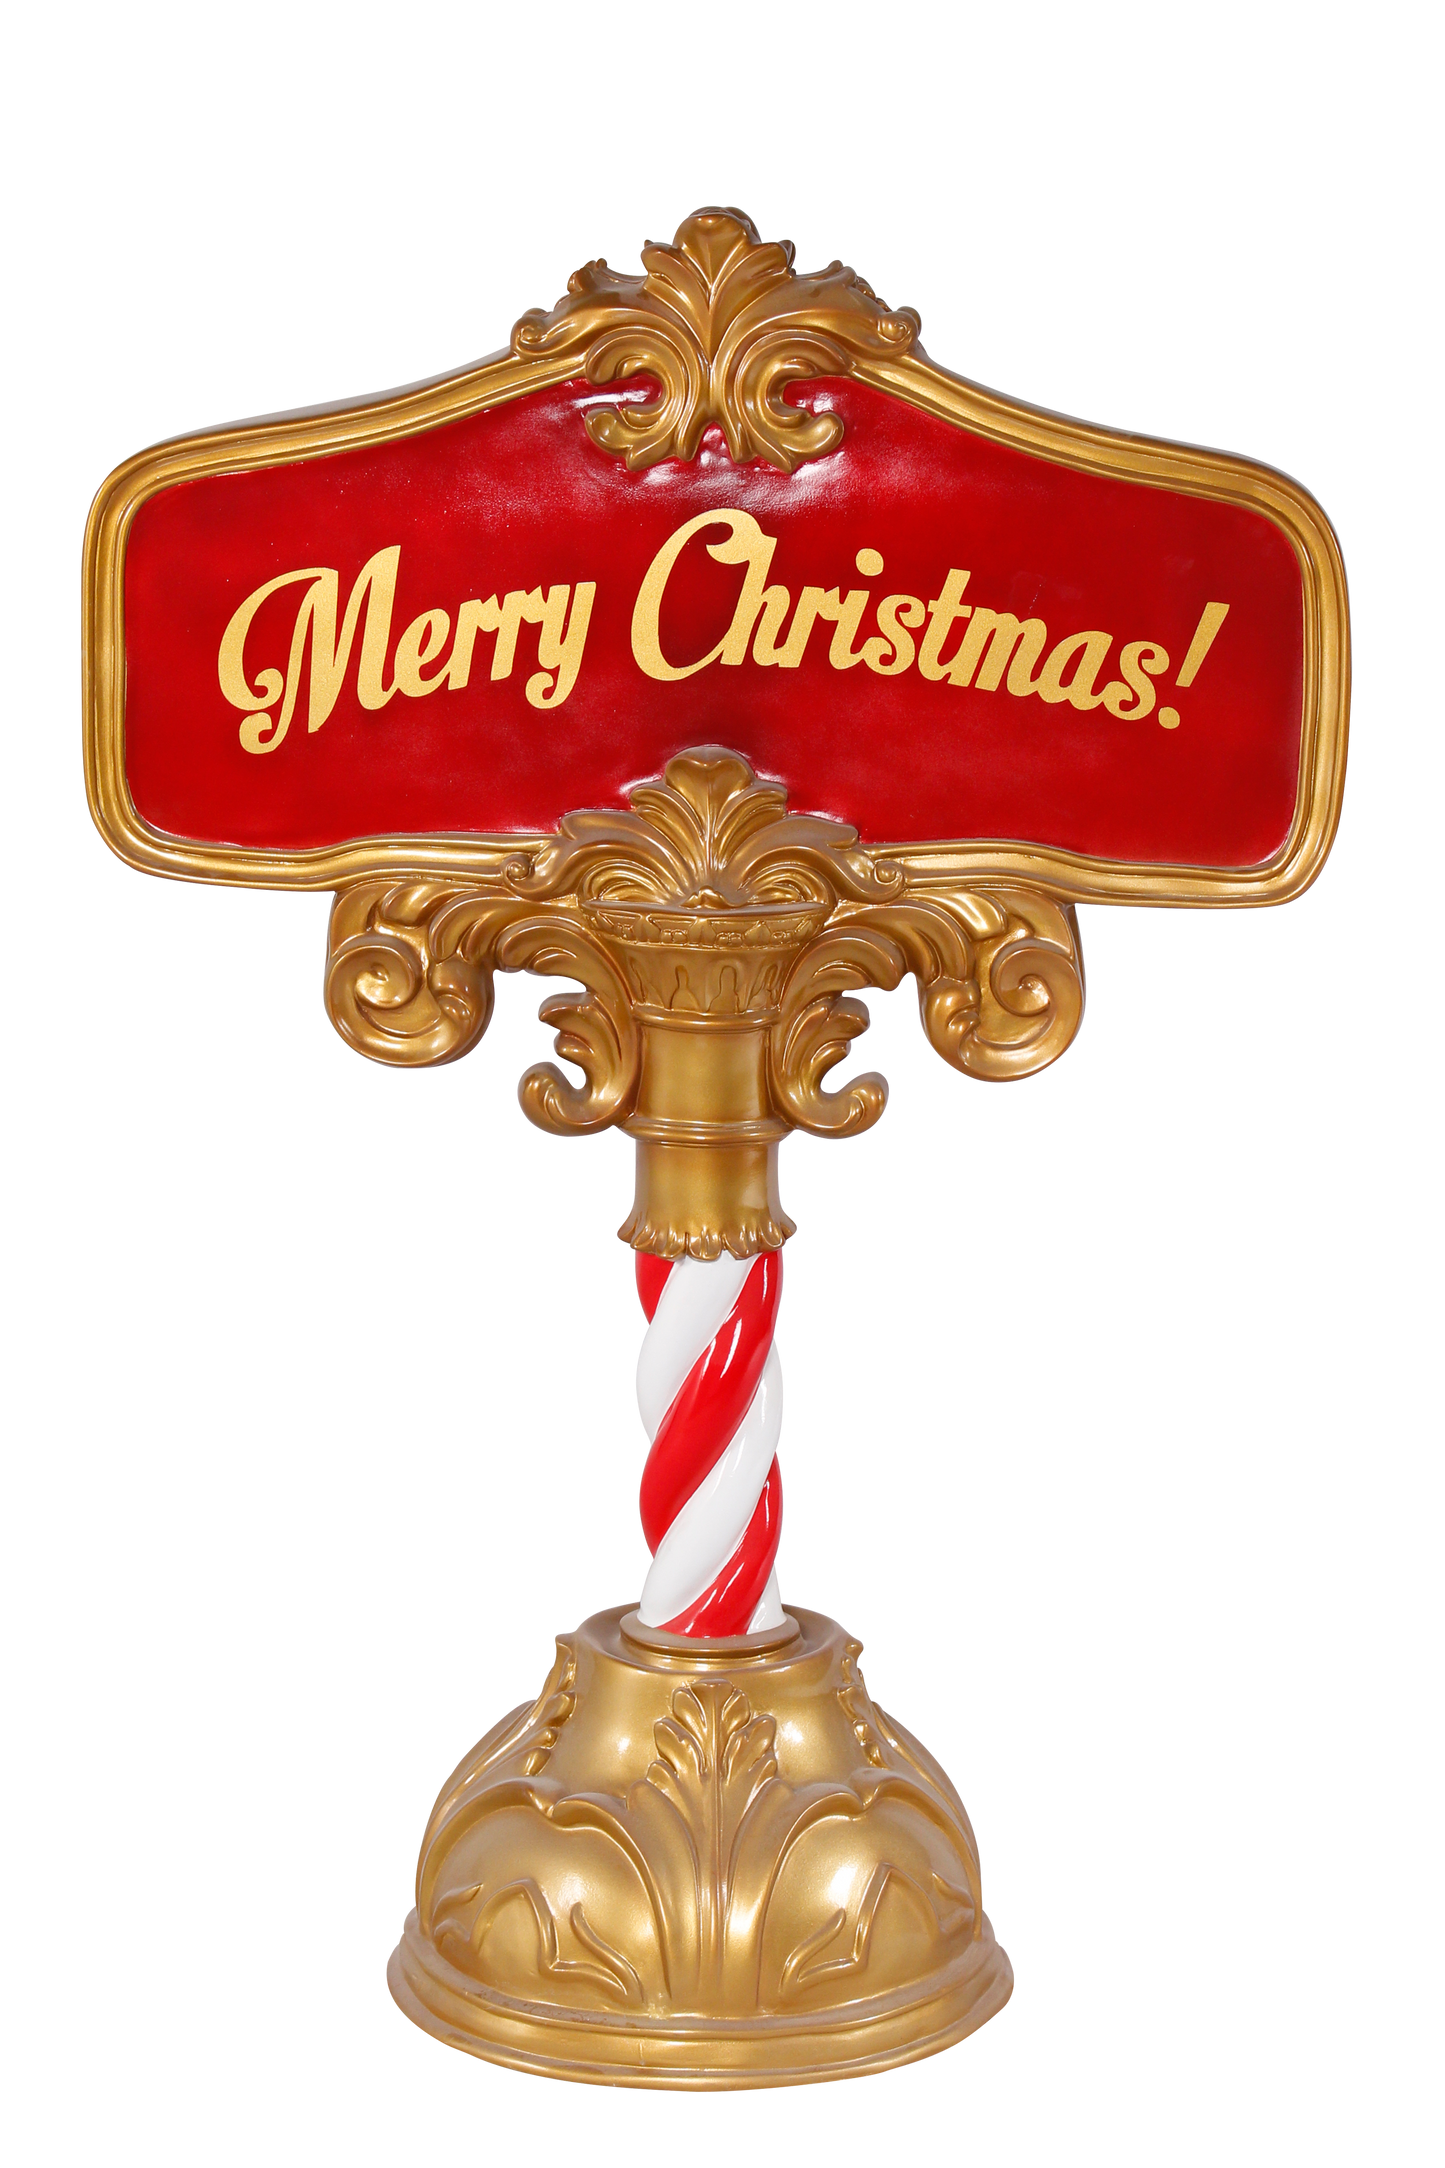 2ft 9in Fiberglass Resin "Merry Christmas!" Sign